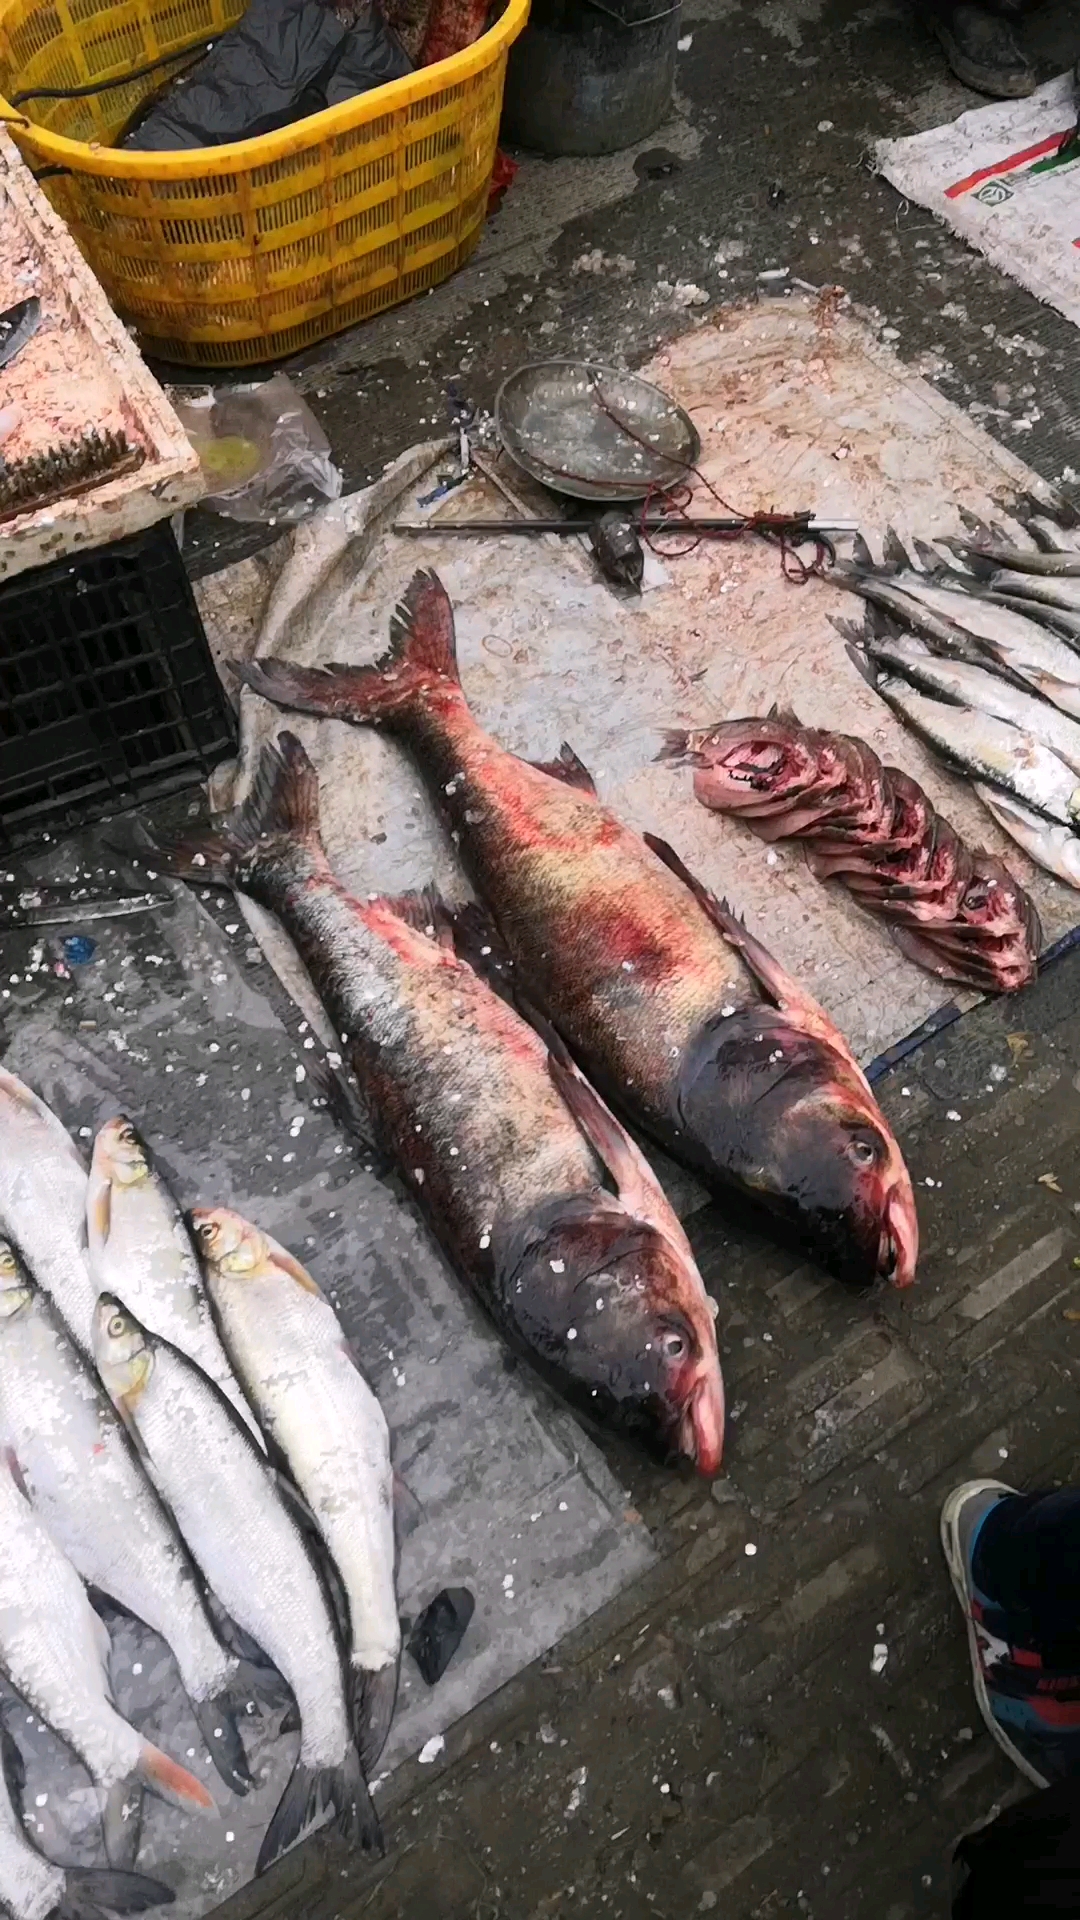 过年的菜市场,你知道这些都是什么鱼吗?